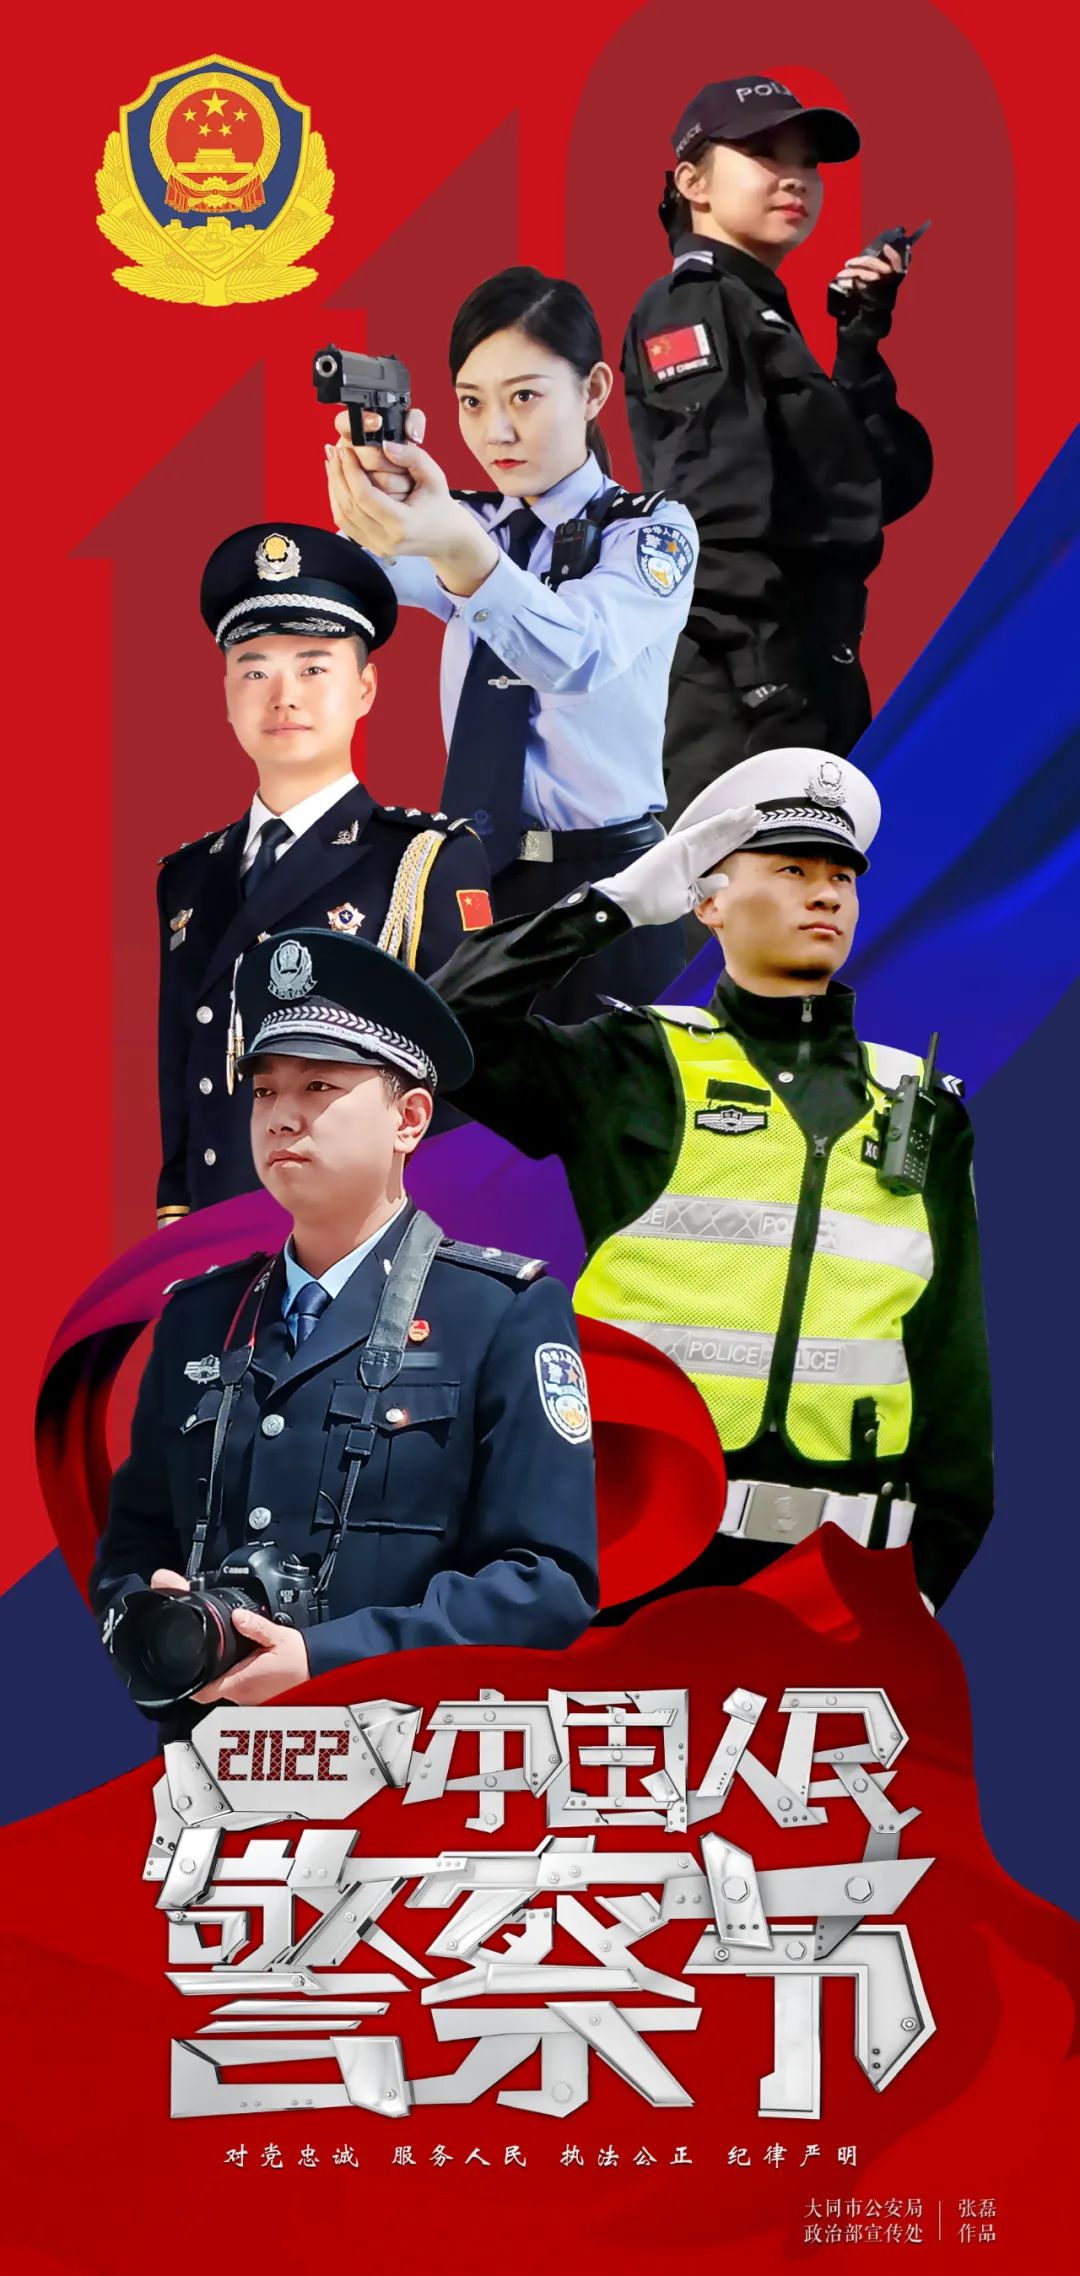 一组警察节海报,致敬守护平安的你!